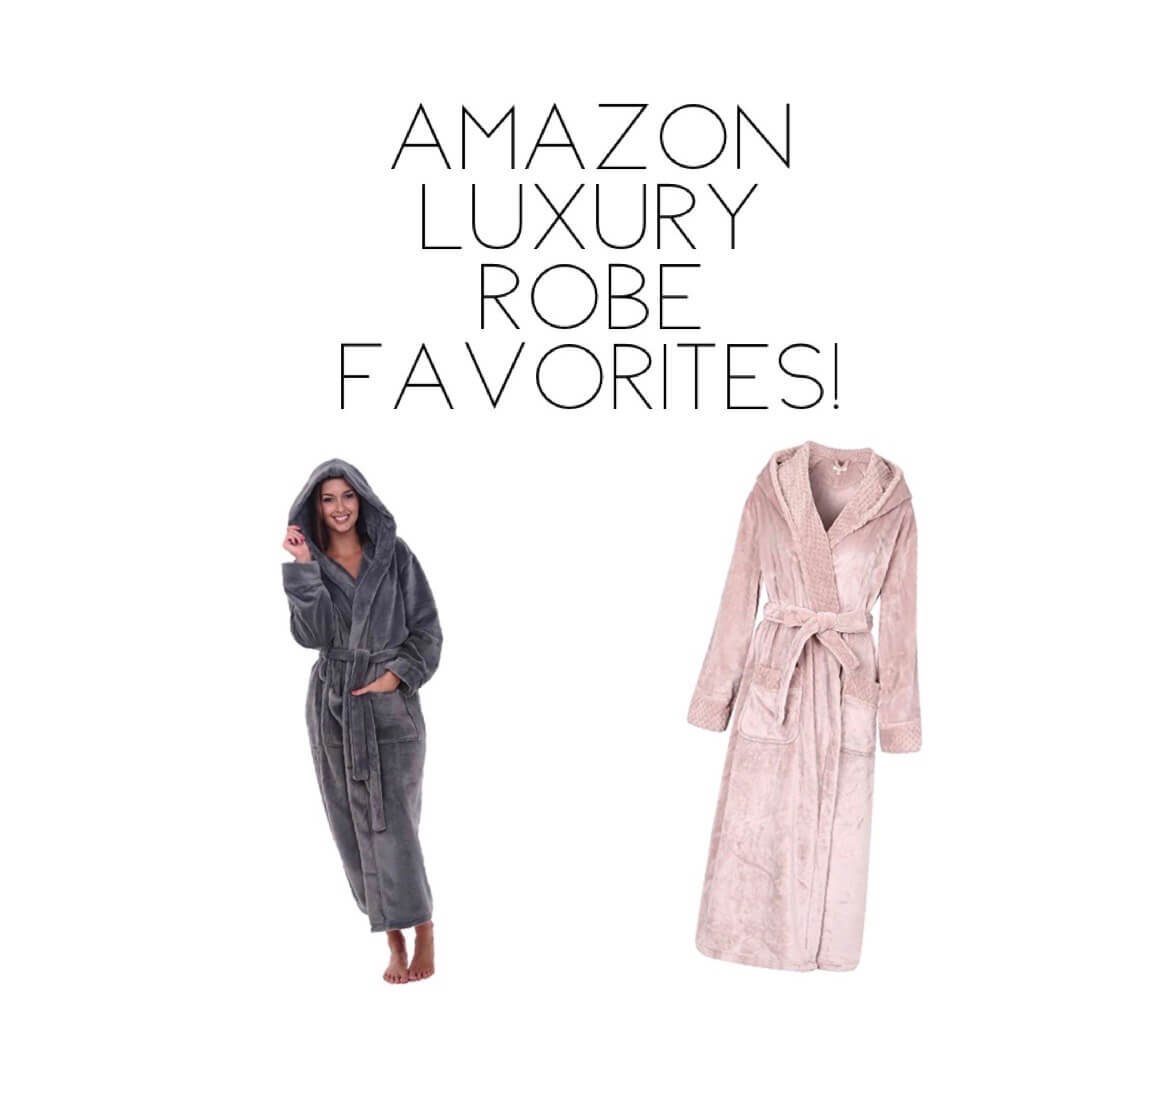 Amazon Luxury Robes.JPG